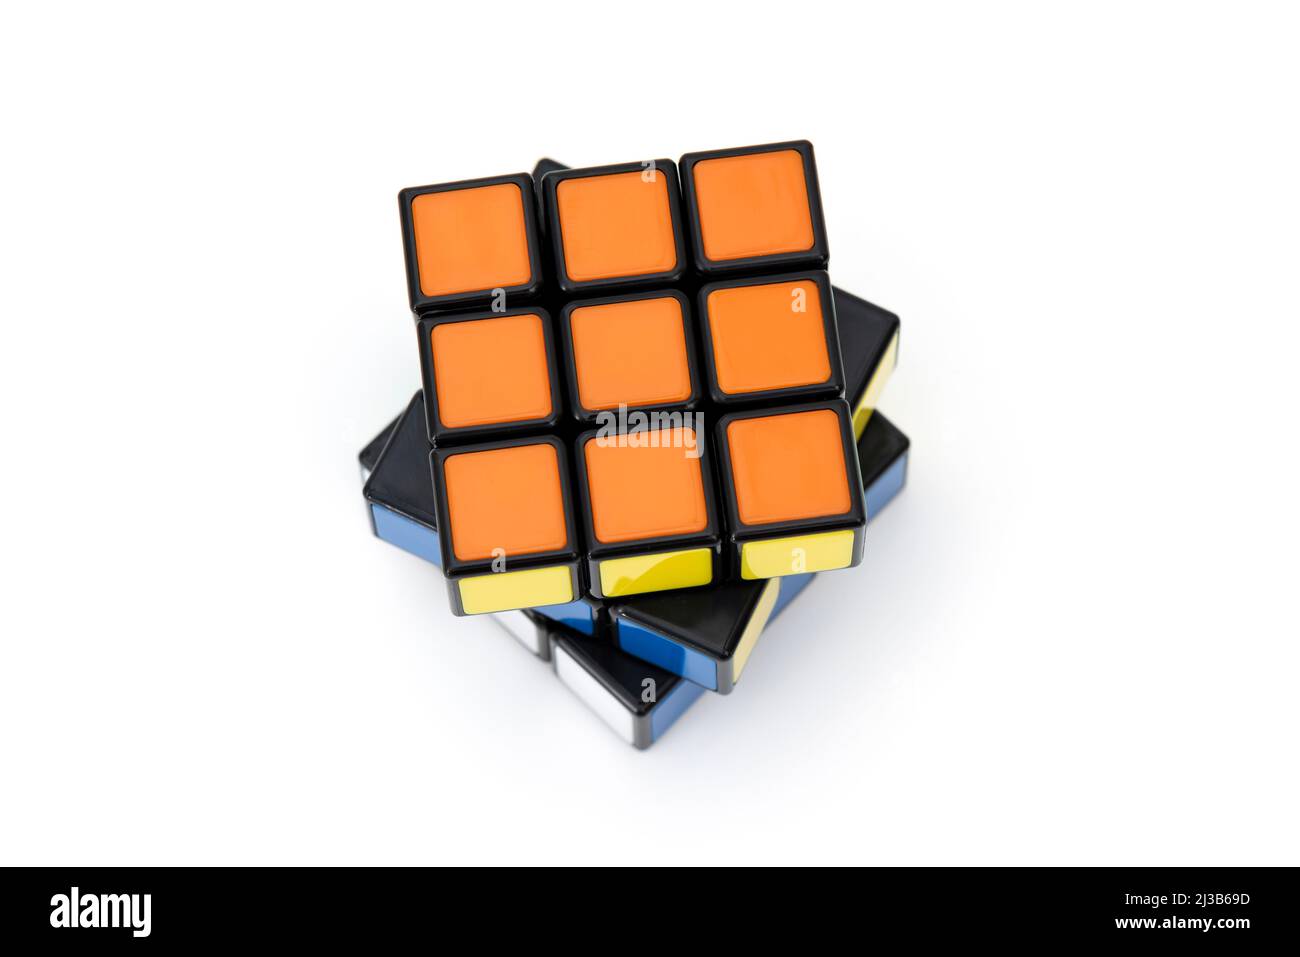 ISTANBUL- TÜRKEI - 24. DEZEMBER 2021: Rubik's Cube auf weißem Hintergrund. Rubik's Cube auf weißem Hintergrund. Rubik's Cube erfunden von einem ungarischen A Stockfoto